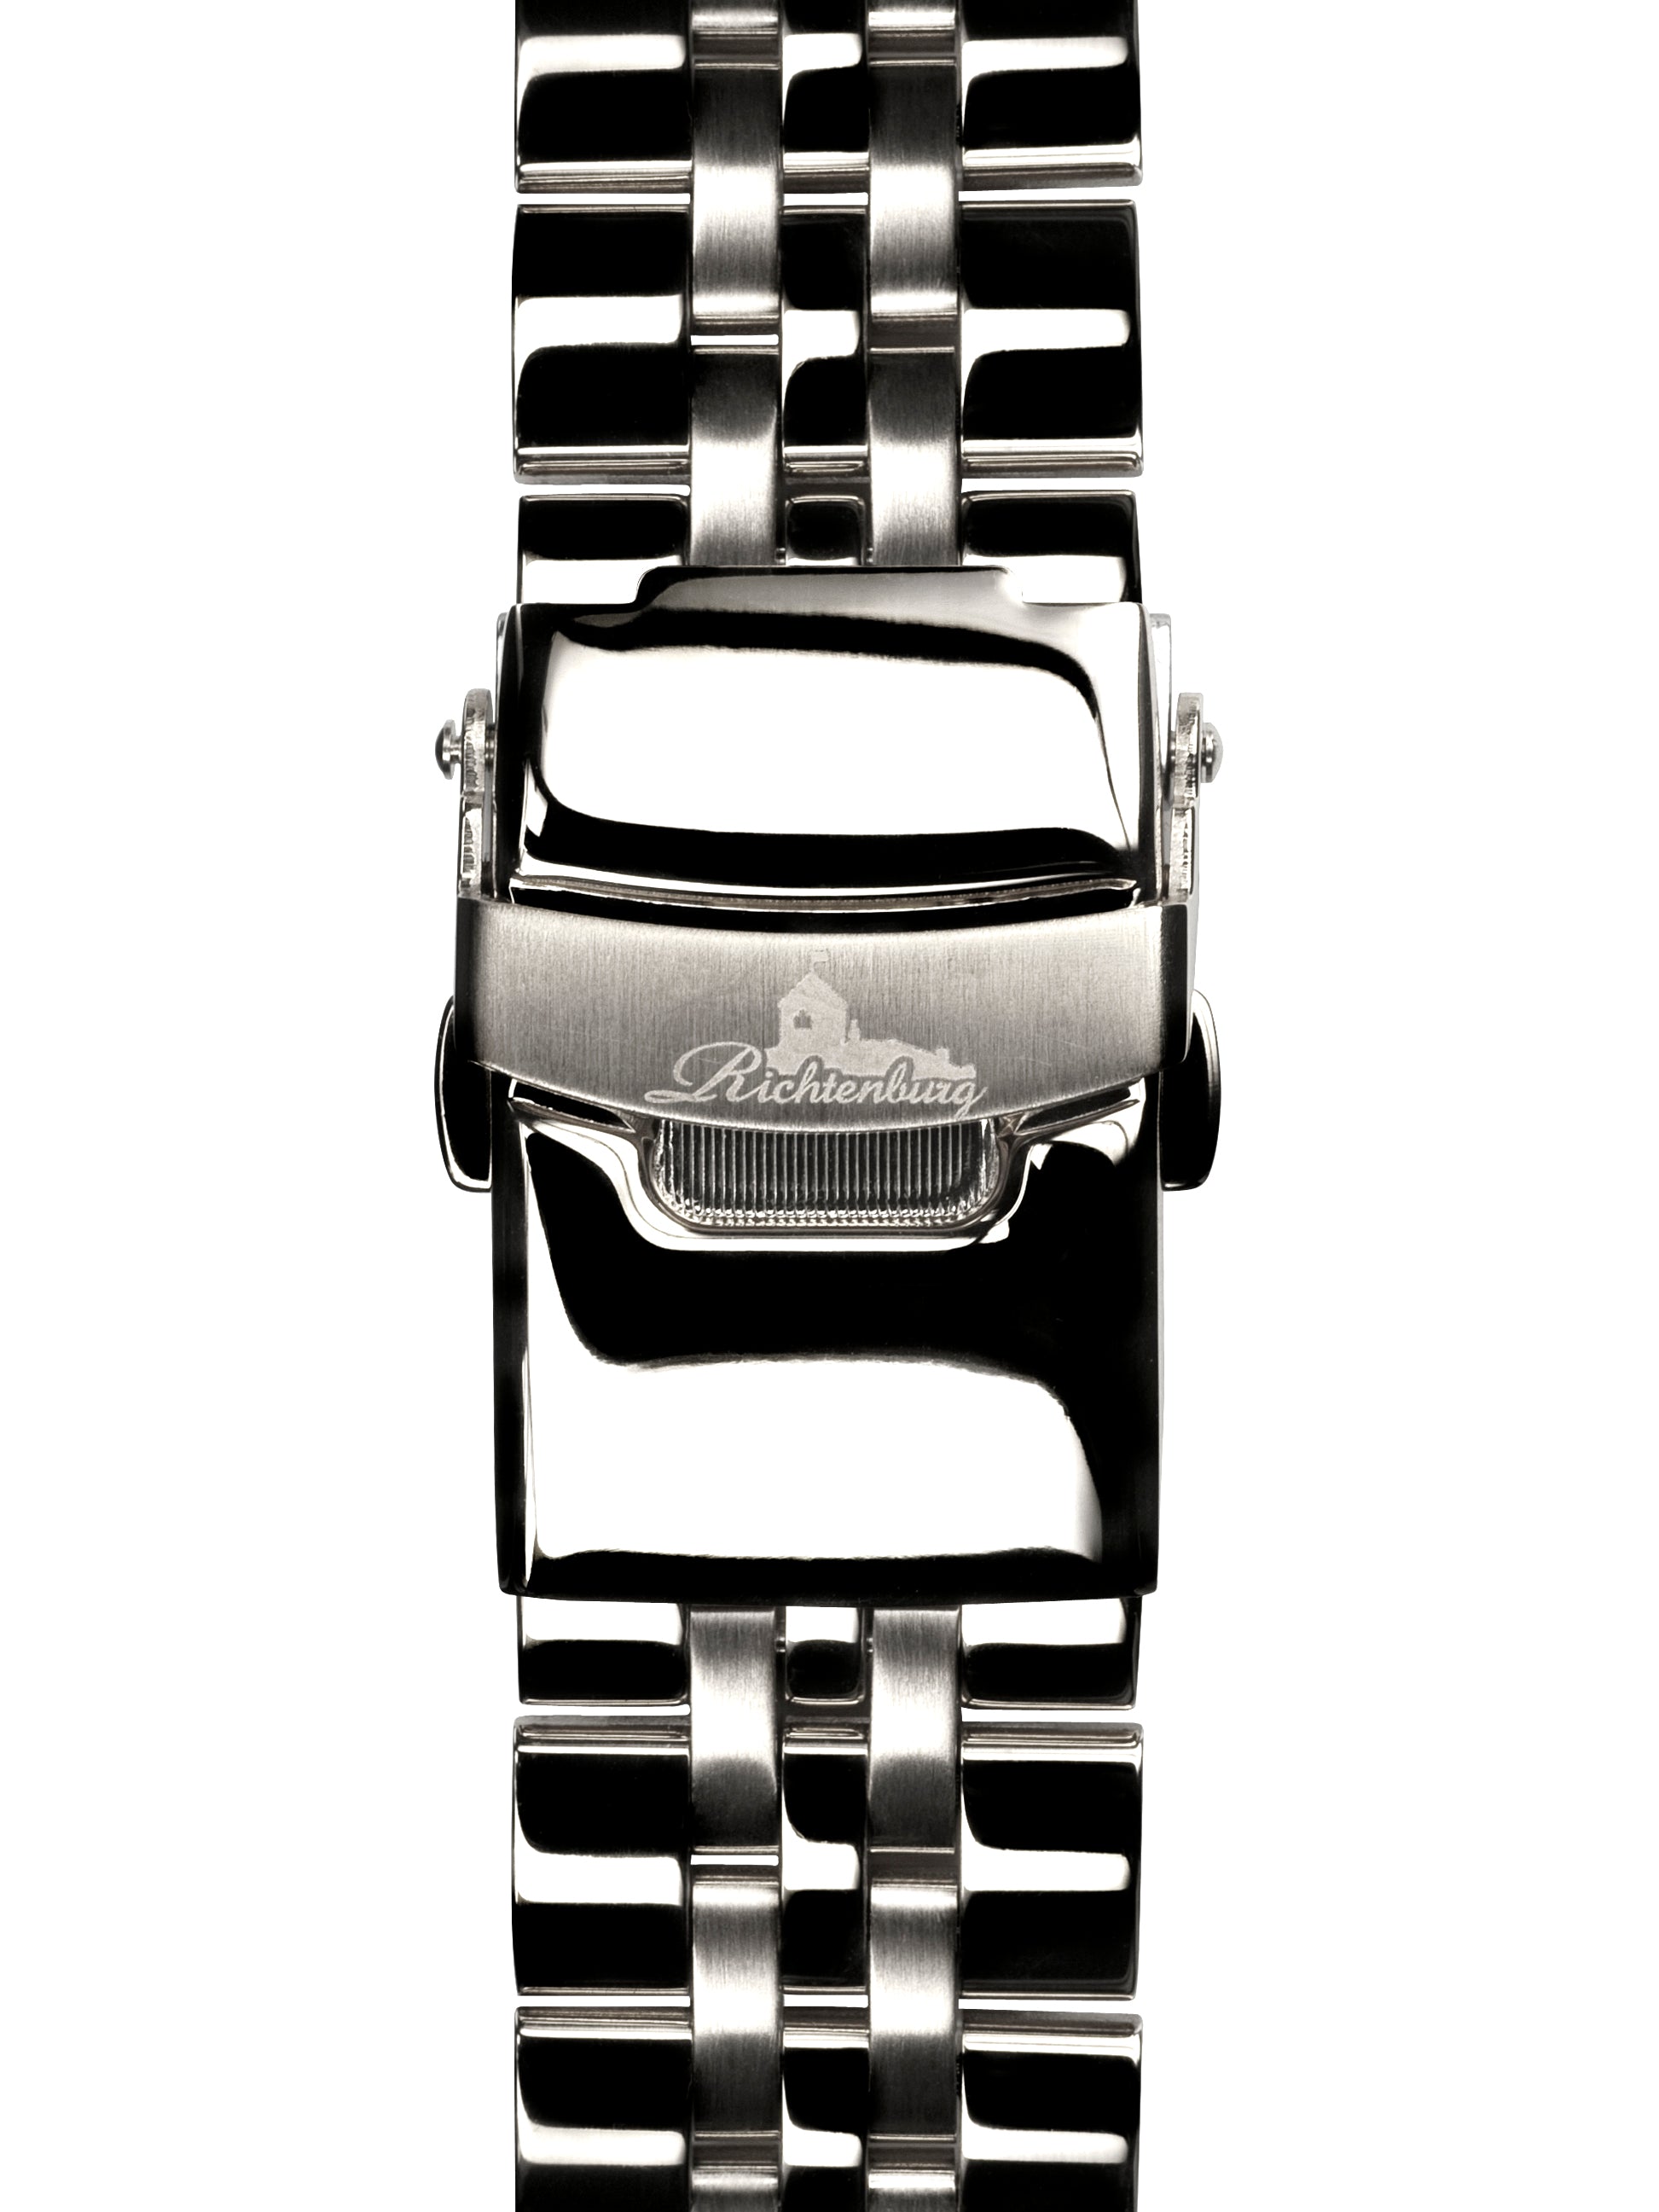 Automatic watches — Cassiopeia — Richtenburg — steel black